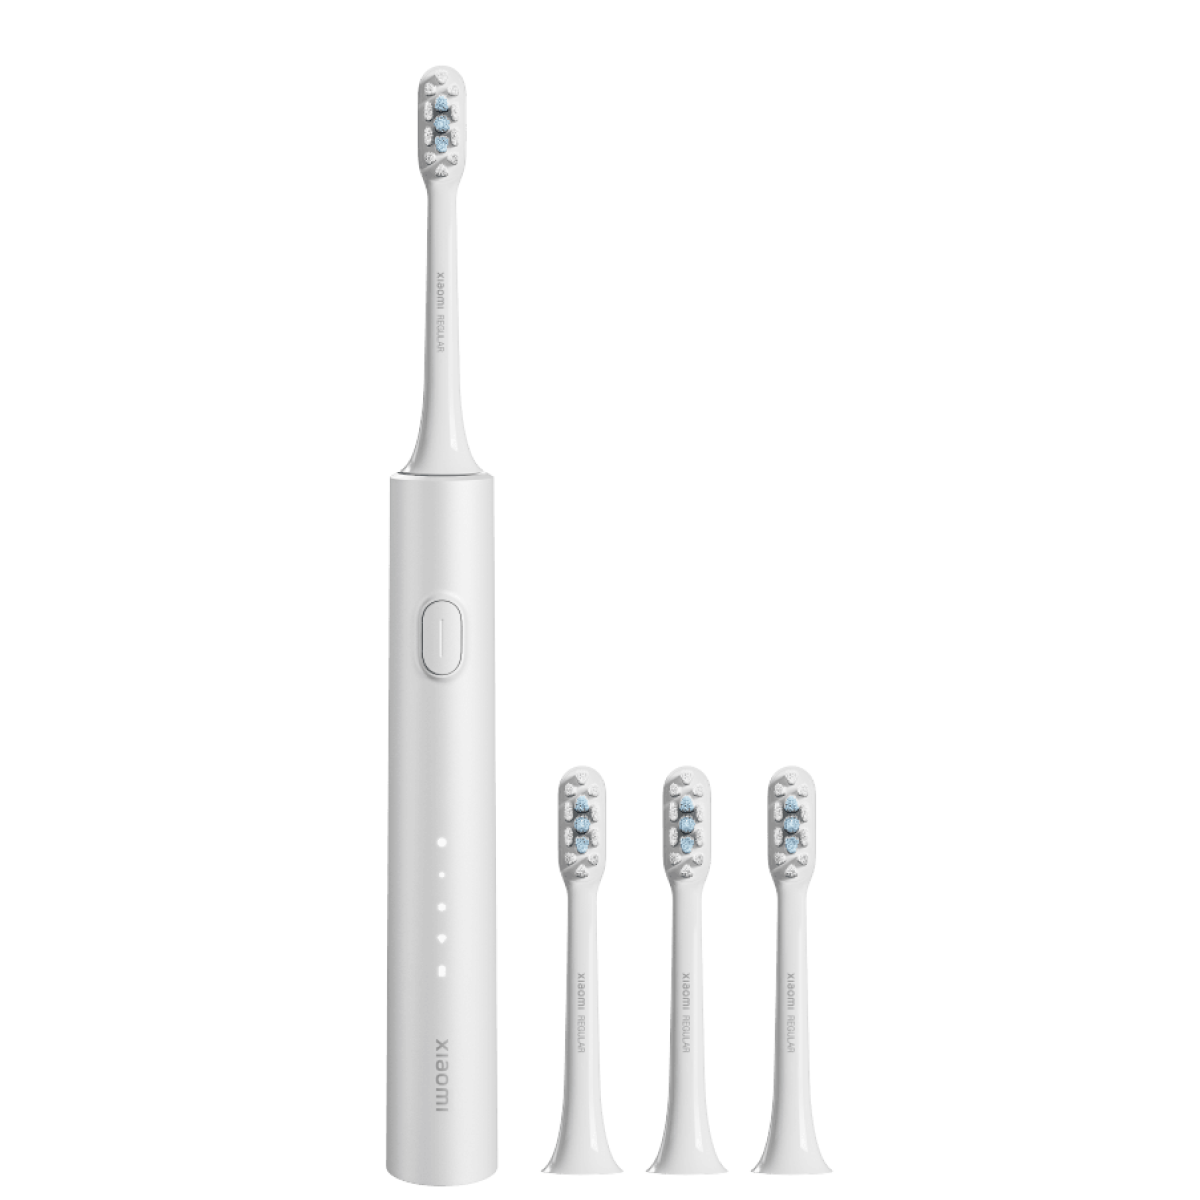 Электрическая зубная щетка Xiaomi Electric Toothbrush T302 серебристая электрическая зубная щетка mijia t302 m синяя